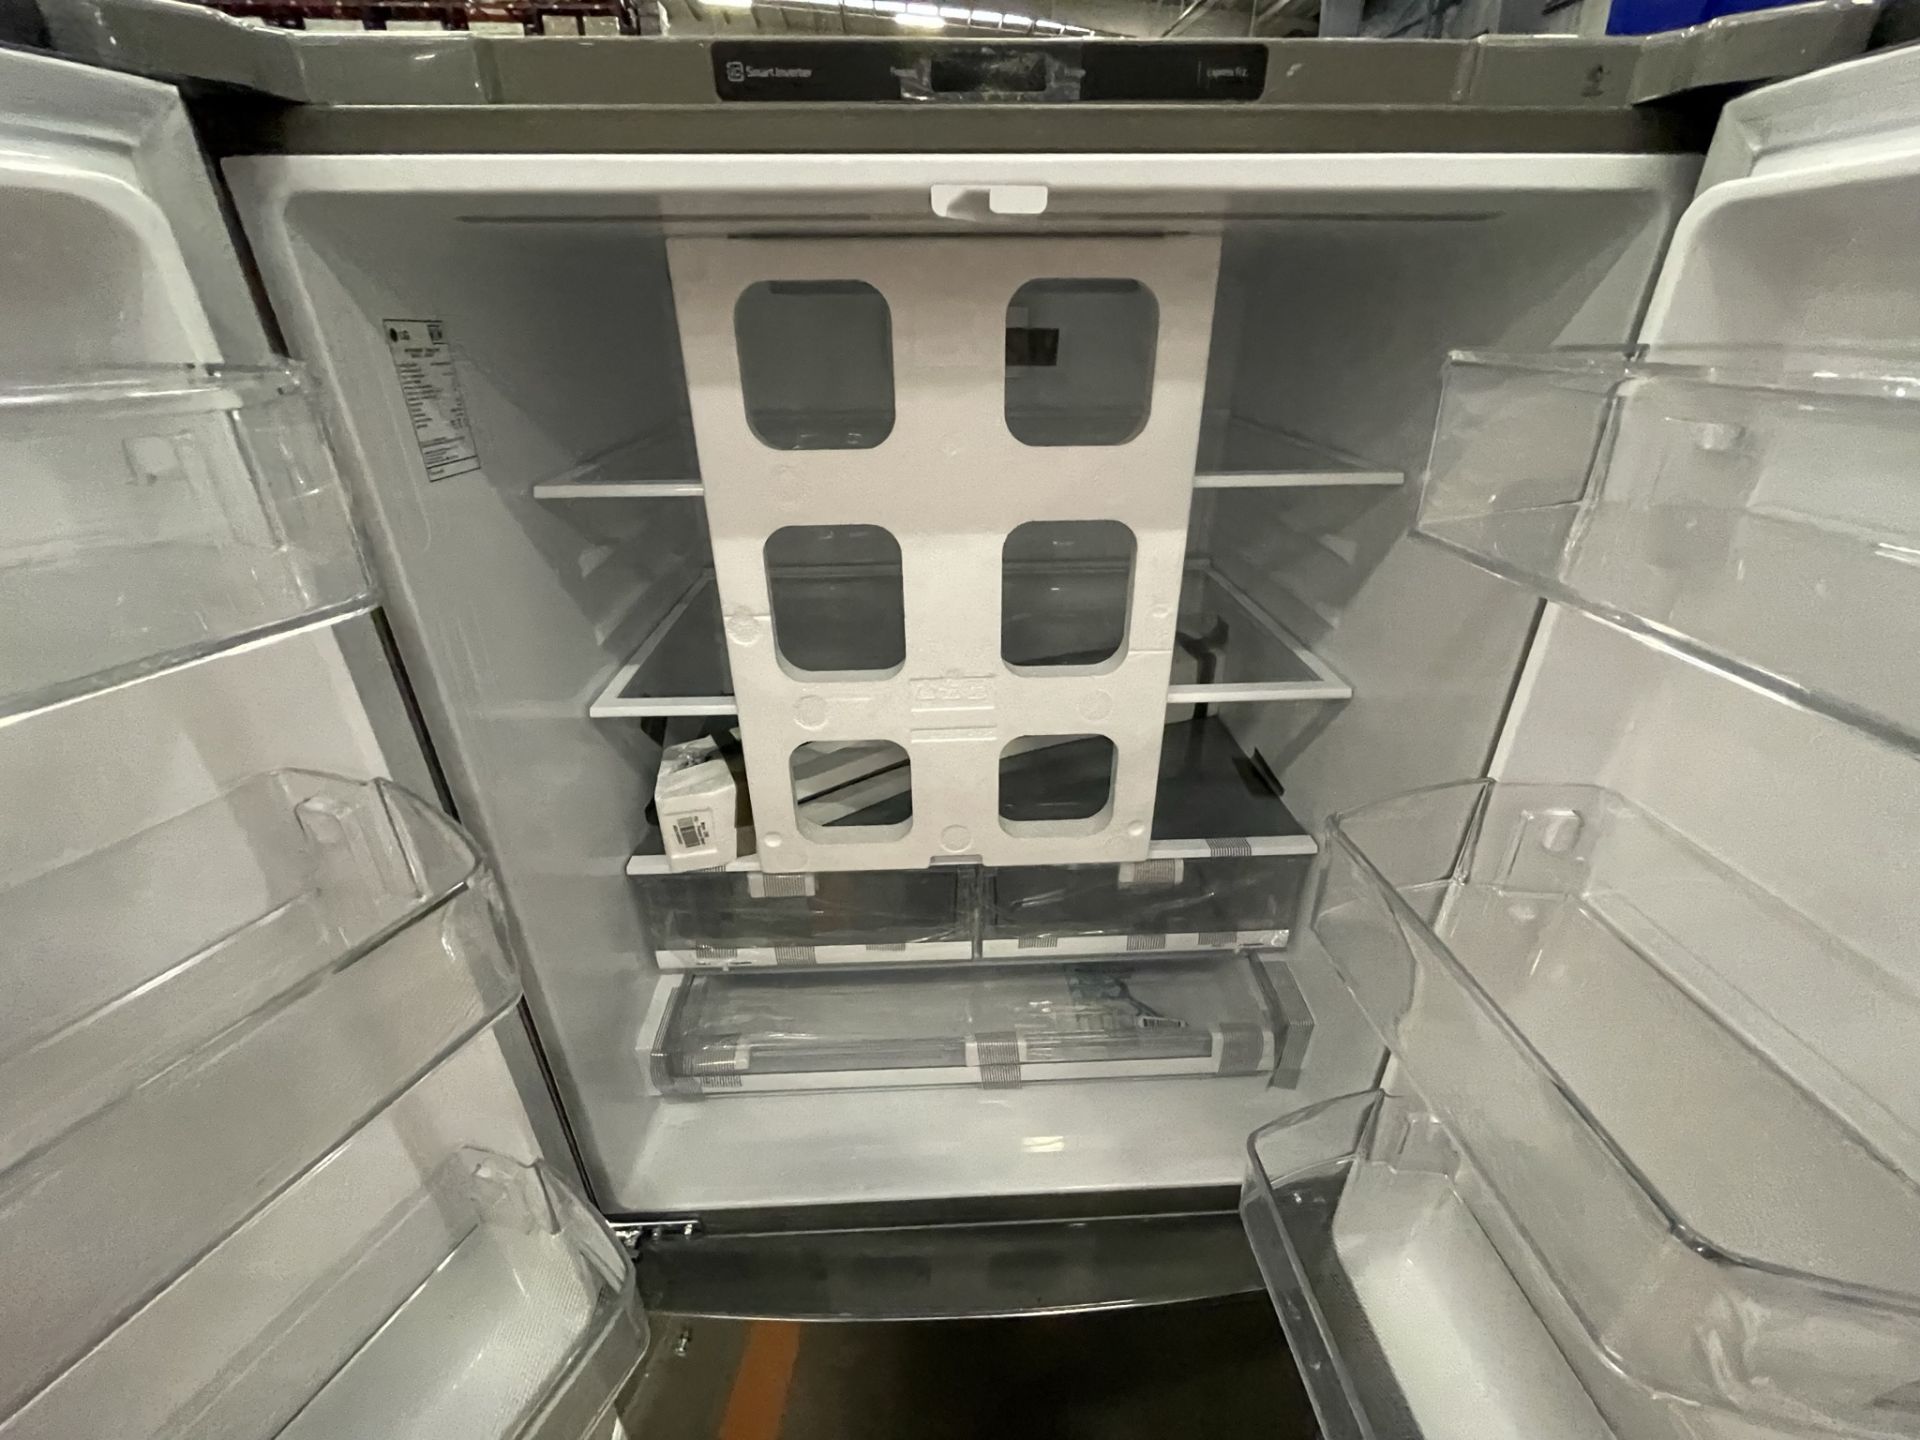 (EQUIPO NUEVO) 1 Refrigerador Marca LG, Modelo GM29BP, Serie LGM237, Color Gris, LB- 623228 (Nuevo, - Image 4 of 8